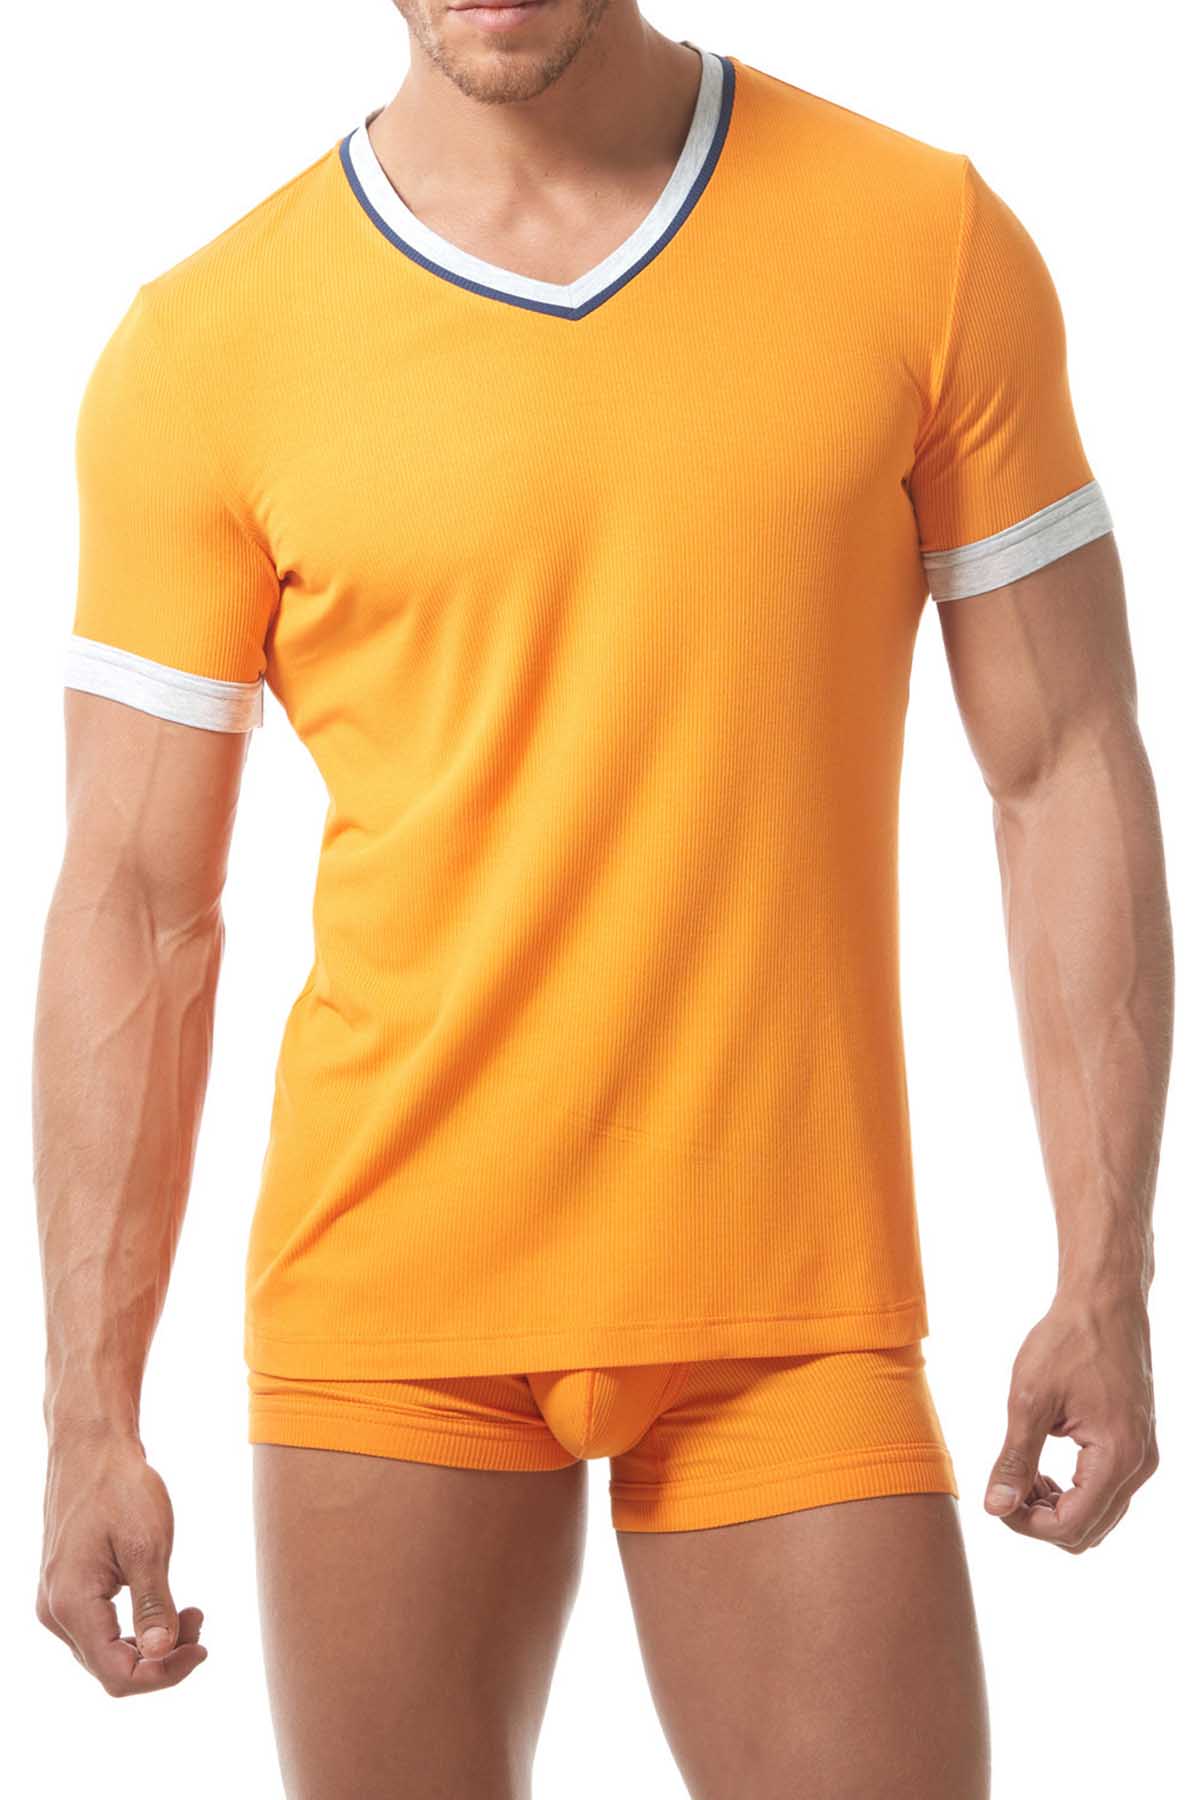 Gregg Homme Orange Sense Shirt